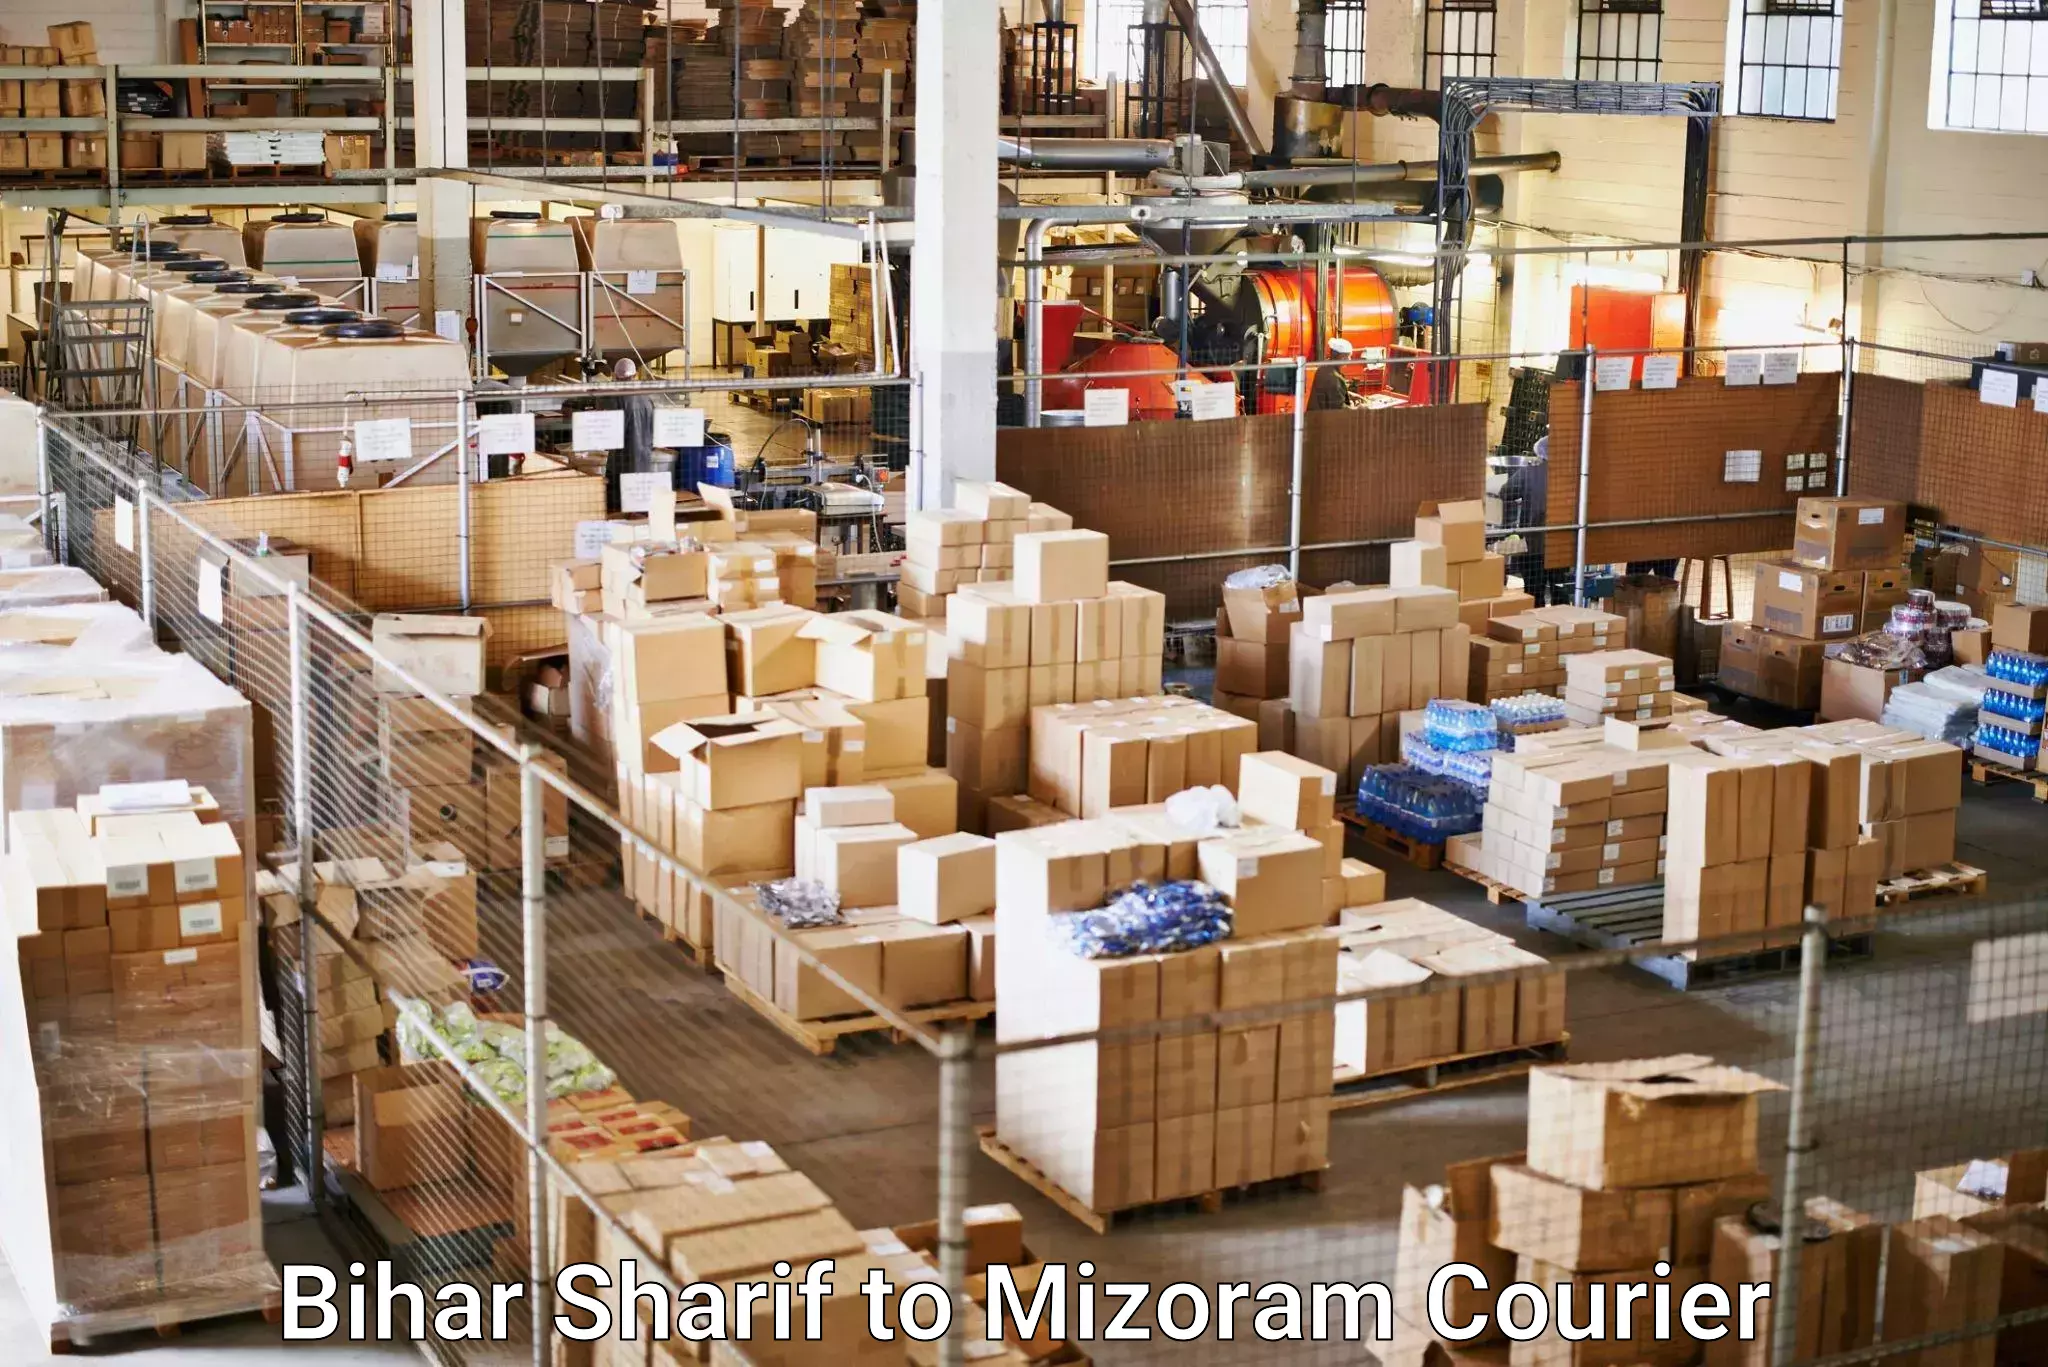 Customer-centric shipping in Bihar Sharif to Aizawl